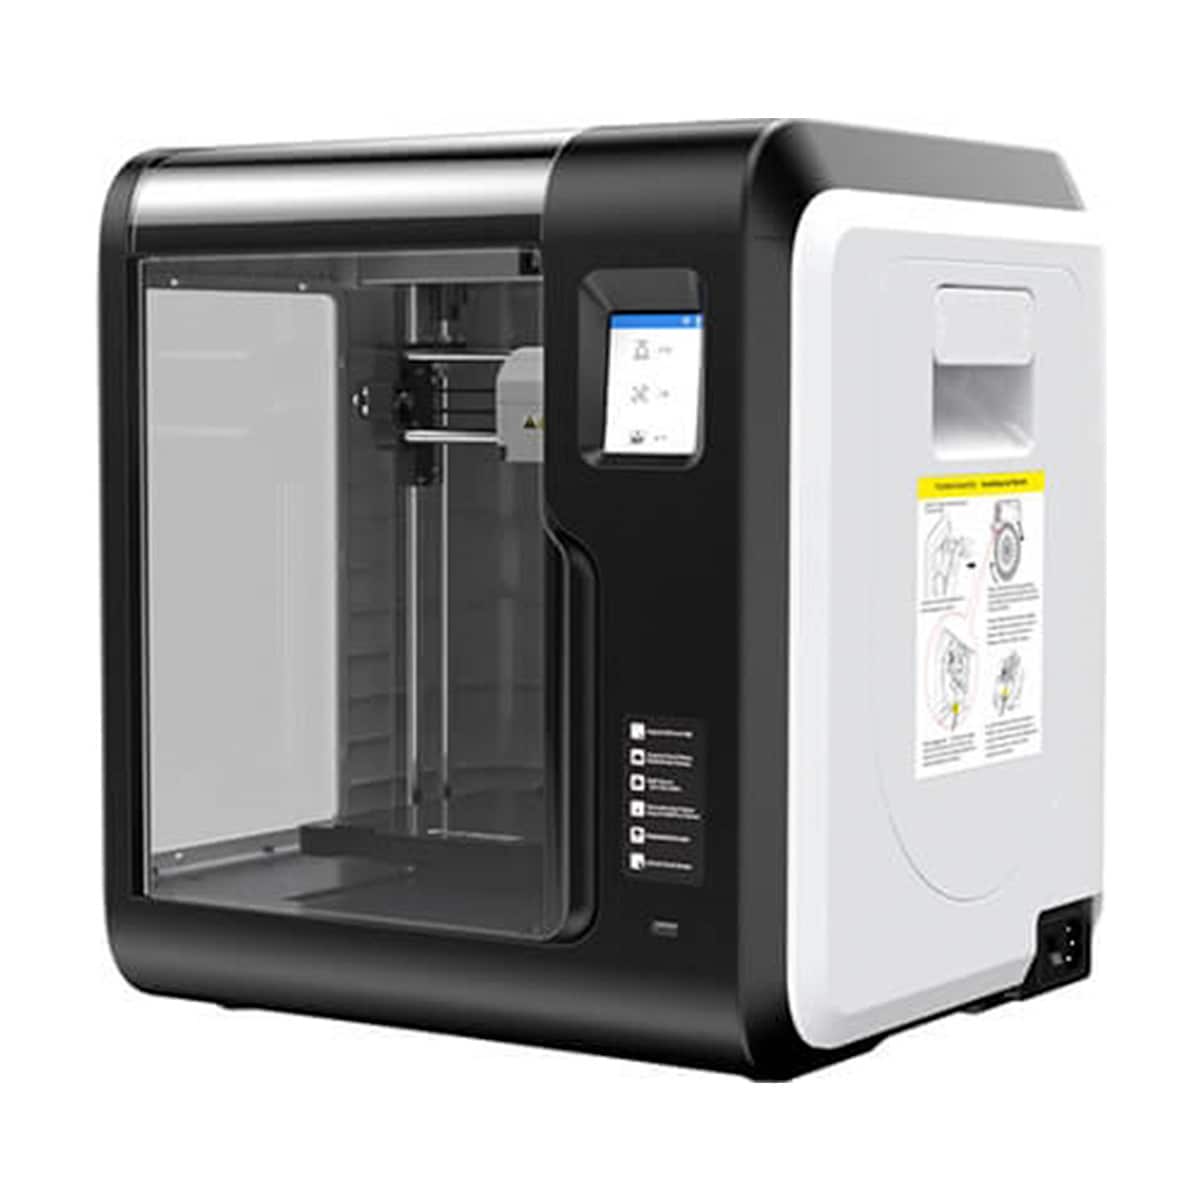 3D printer | Filament og annet tilbehør - Godt og oversiktlig utvalg |  Elkjøp